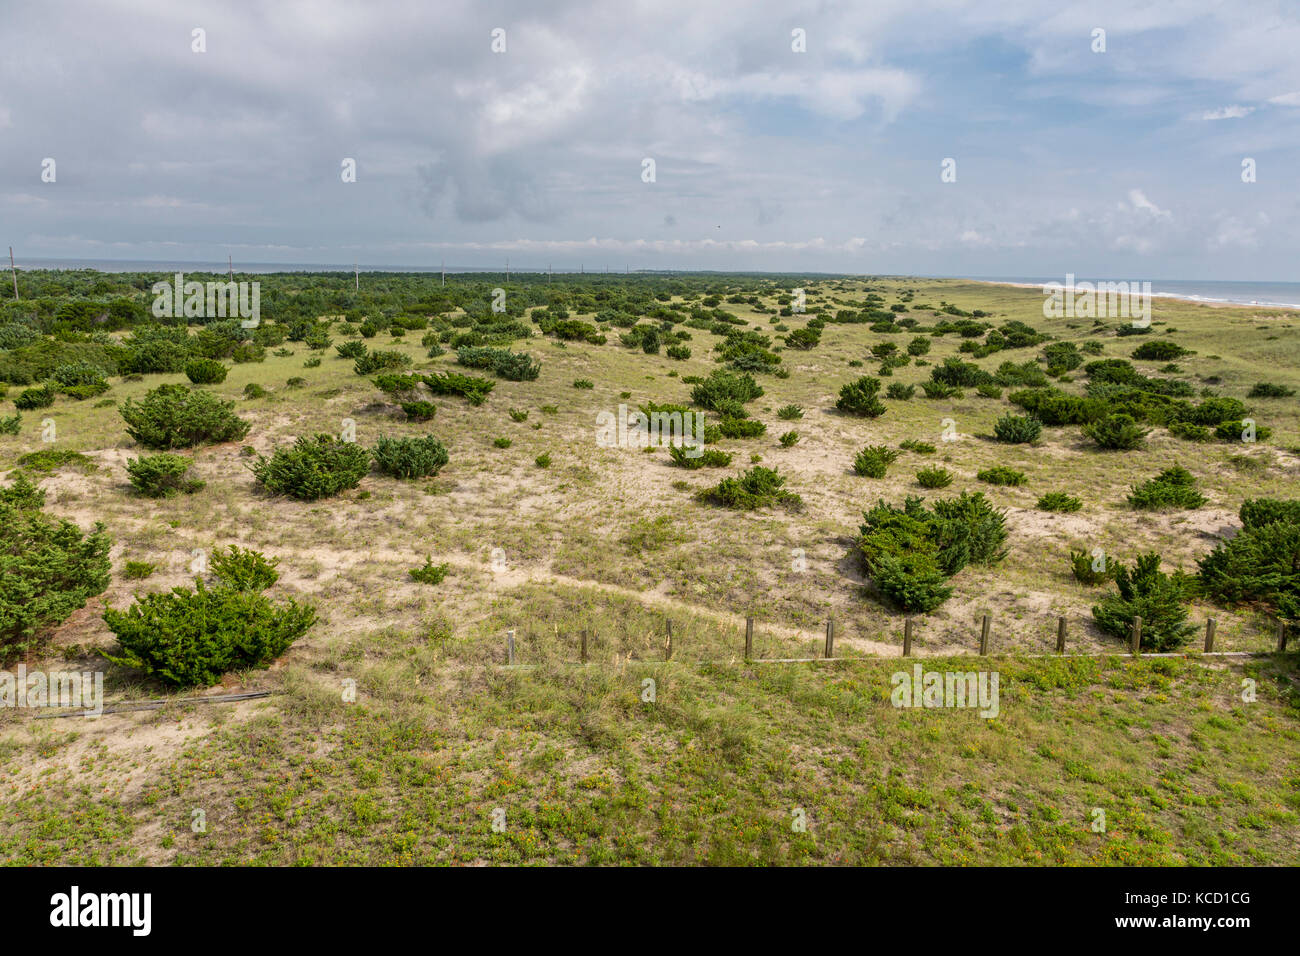 Avon, Outer Banks, North Carolina, USA. Vegetation auf einer vorgelagerten Insel stabilisiert die Dünen. Atlantik oben rechts, Currituck Sound oben links. Stockfoto